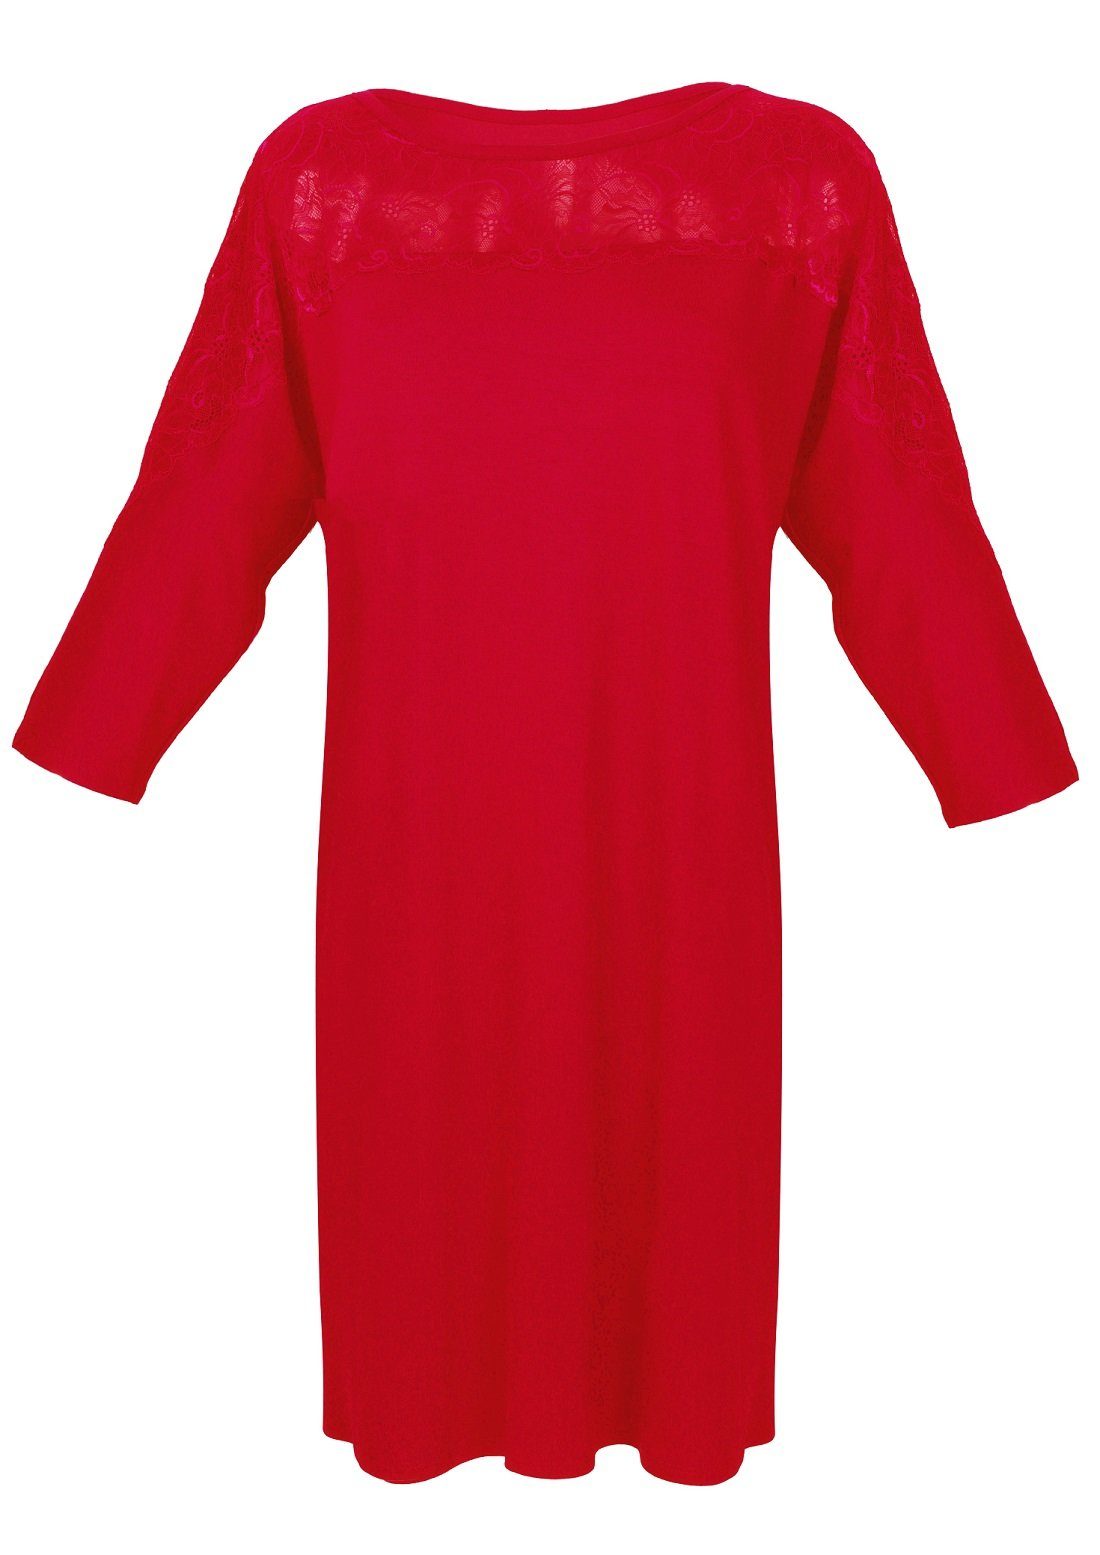 DKaren Nachthemd mit bequeme Nachtwäsche Schnitt lockerem rot